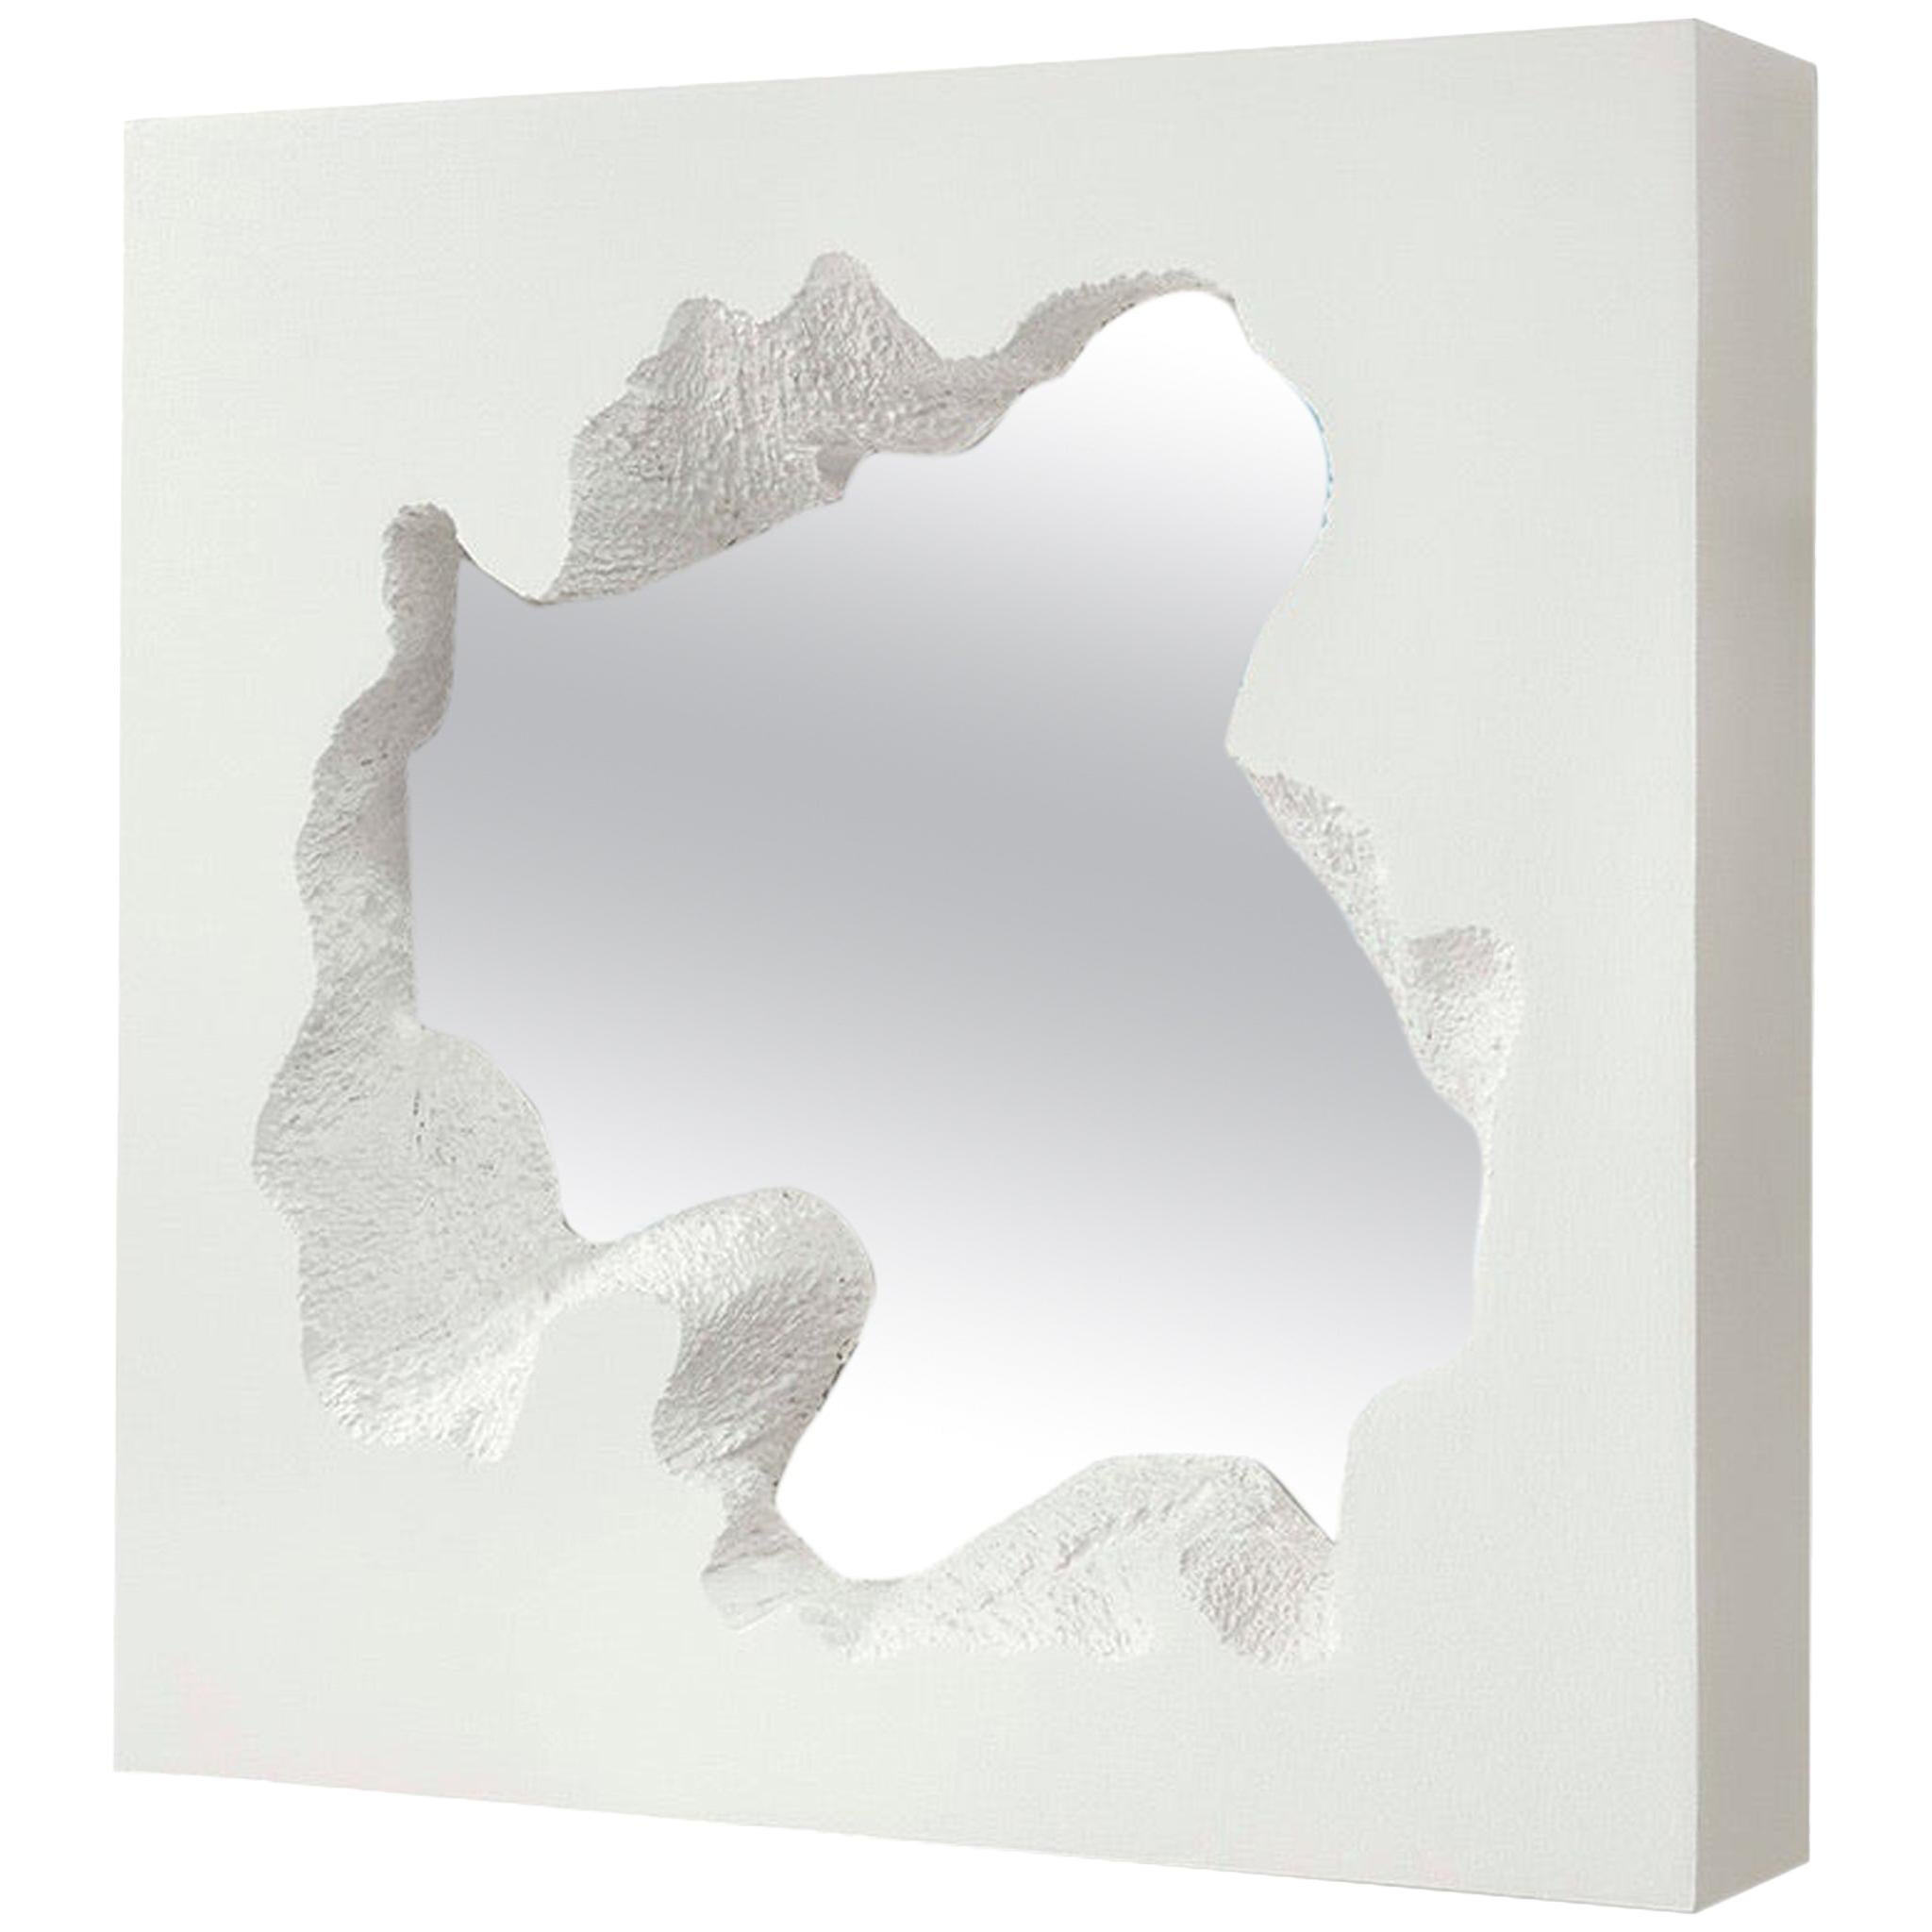 Gufram Broken Square Mirror White von Snarkitecture, limitierte Auflage von 77 Stück